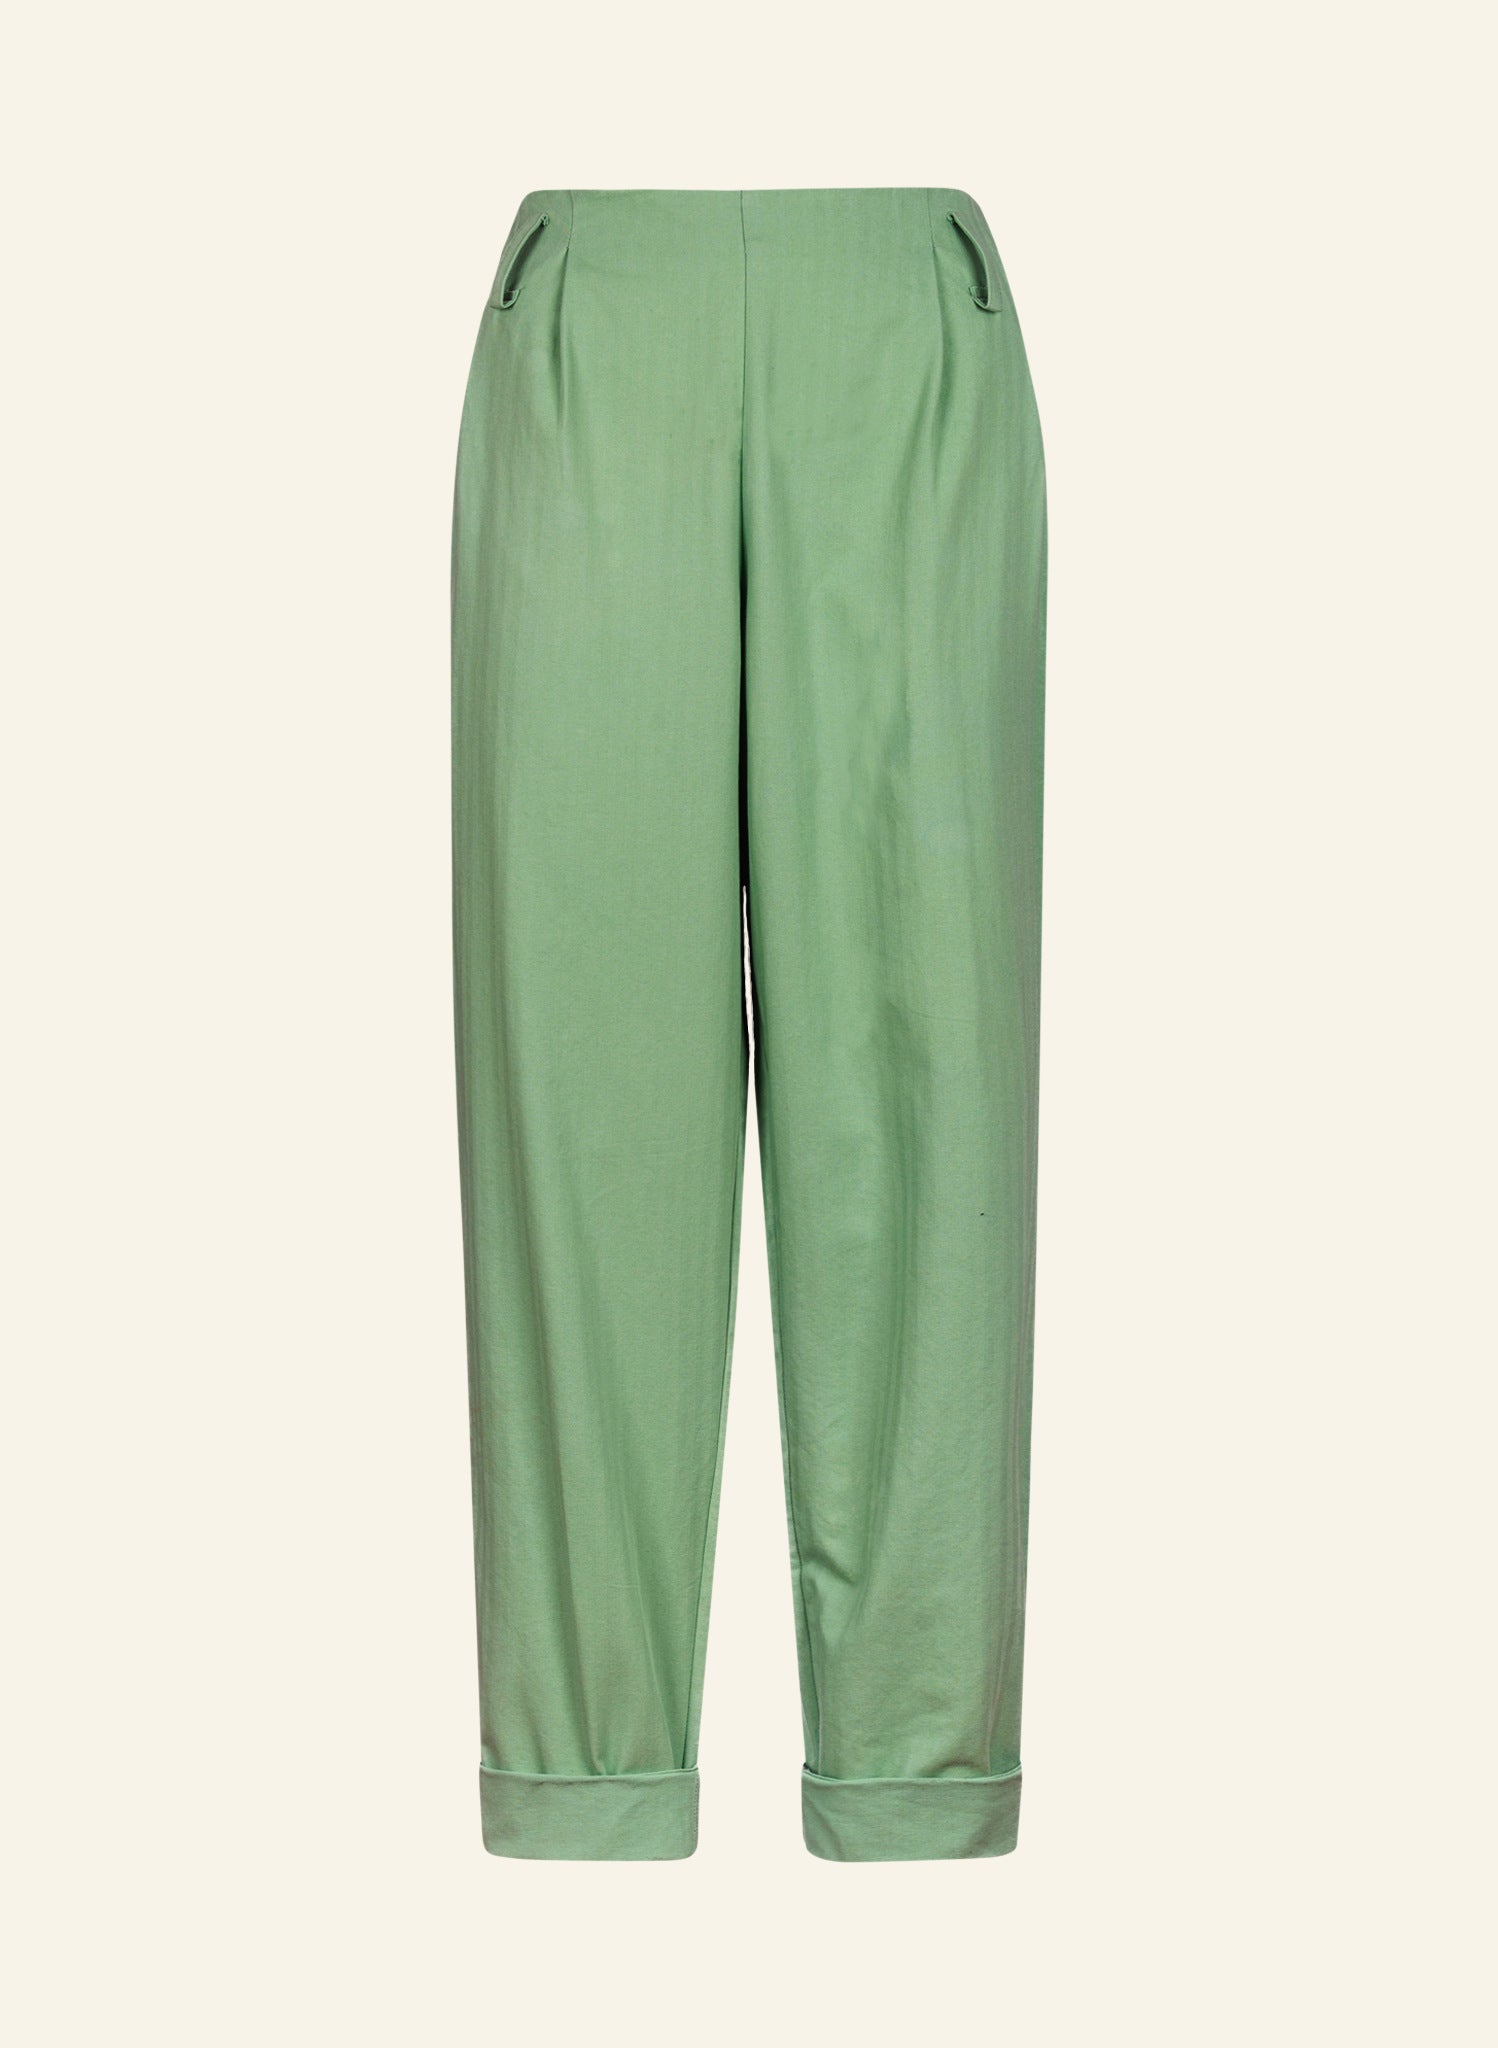 Wilma - Peapod Green Trousers